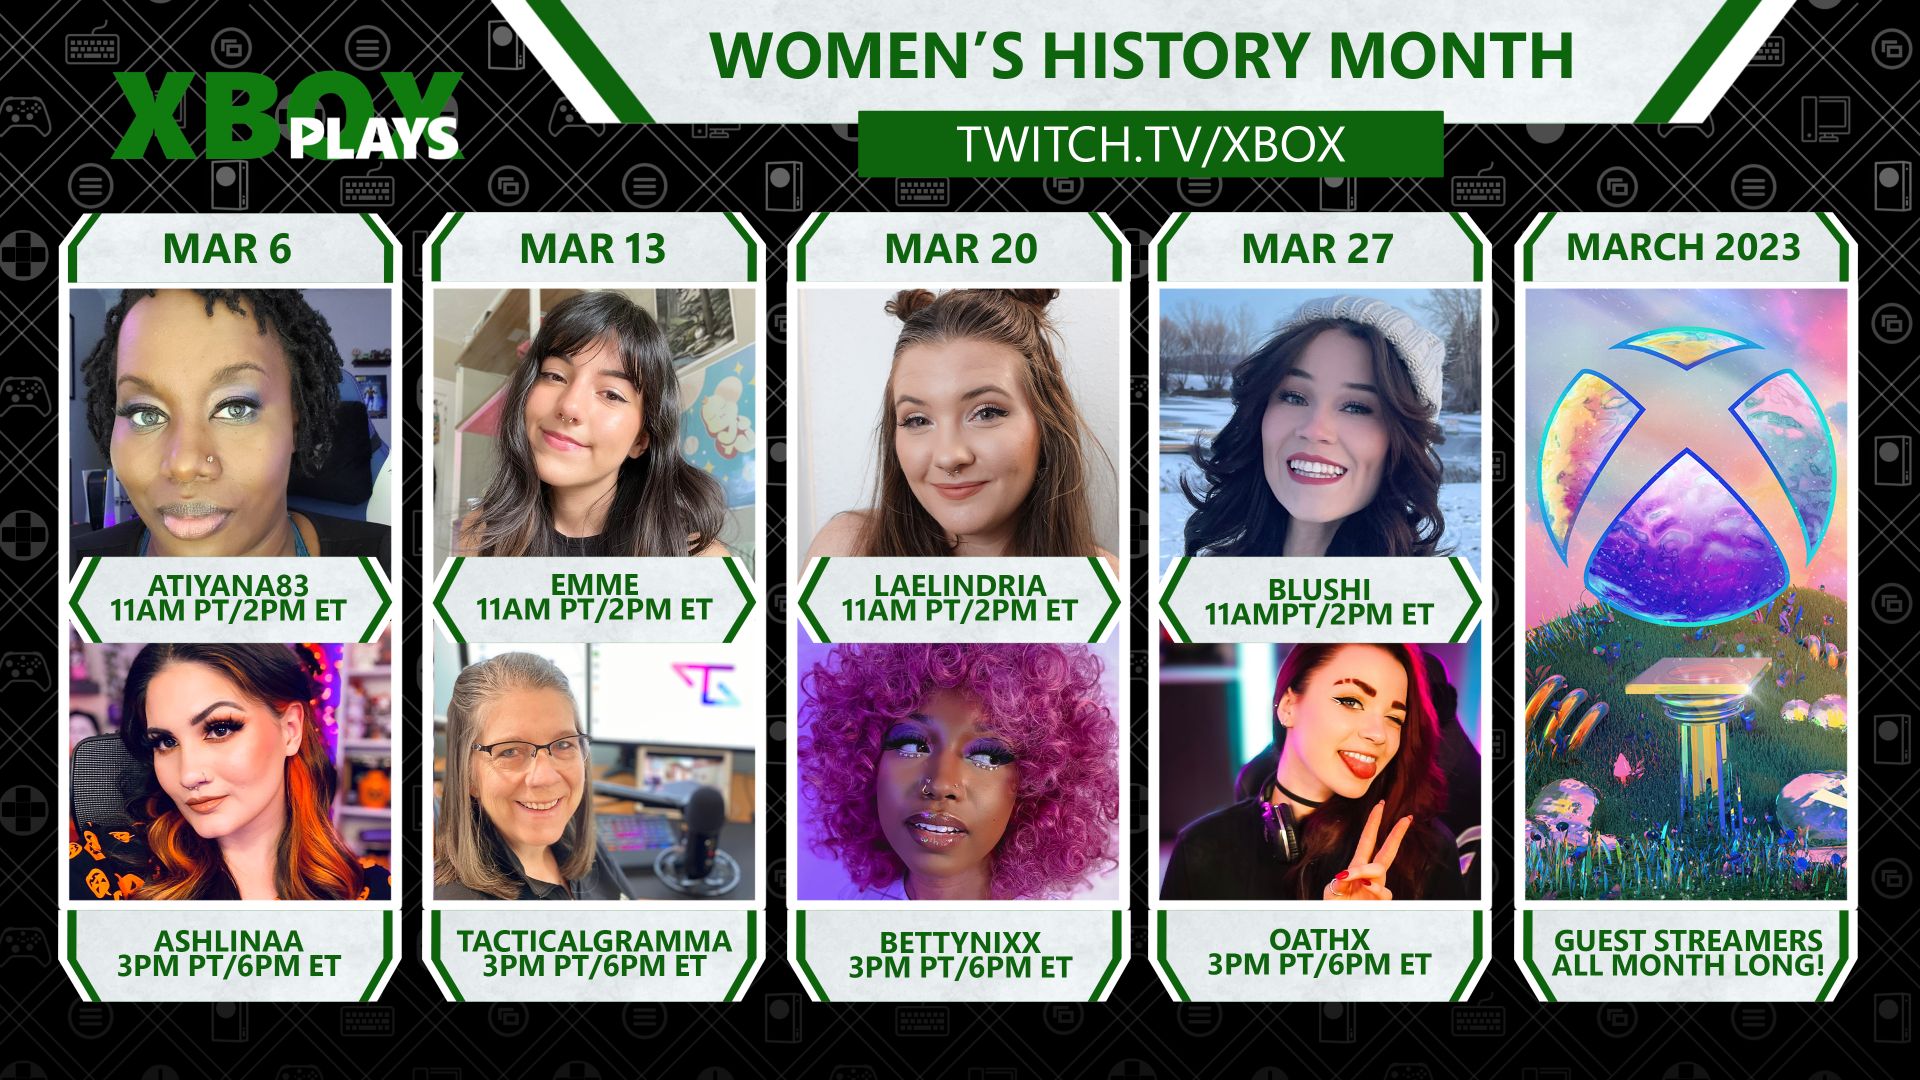 Подборка изображений восьми женщин-геймеров на Xbox Plays для Месяца женской истории на twitch.tv/xbox.